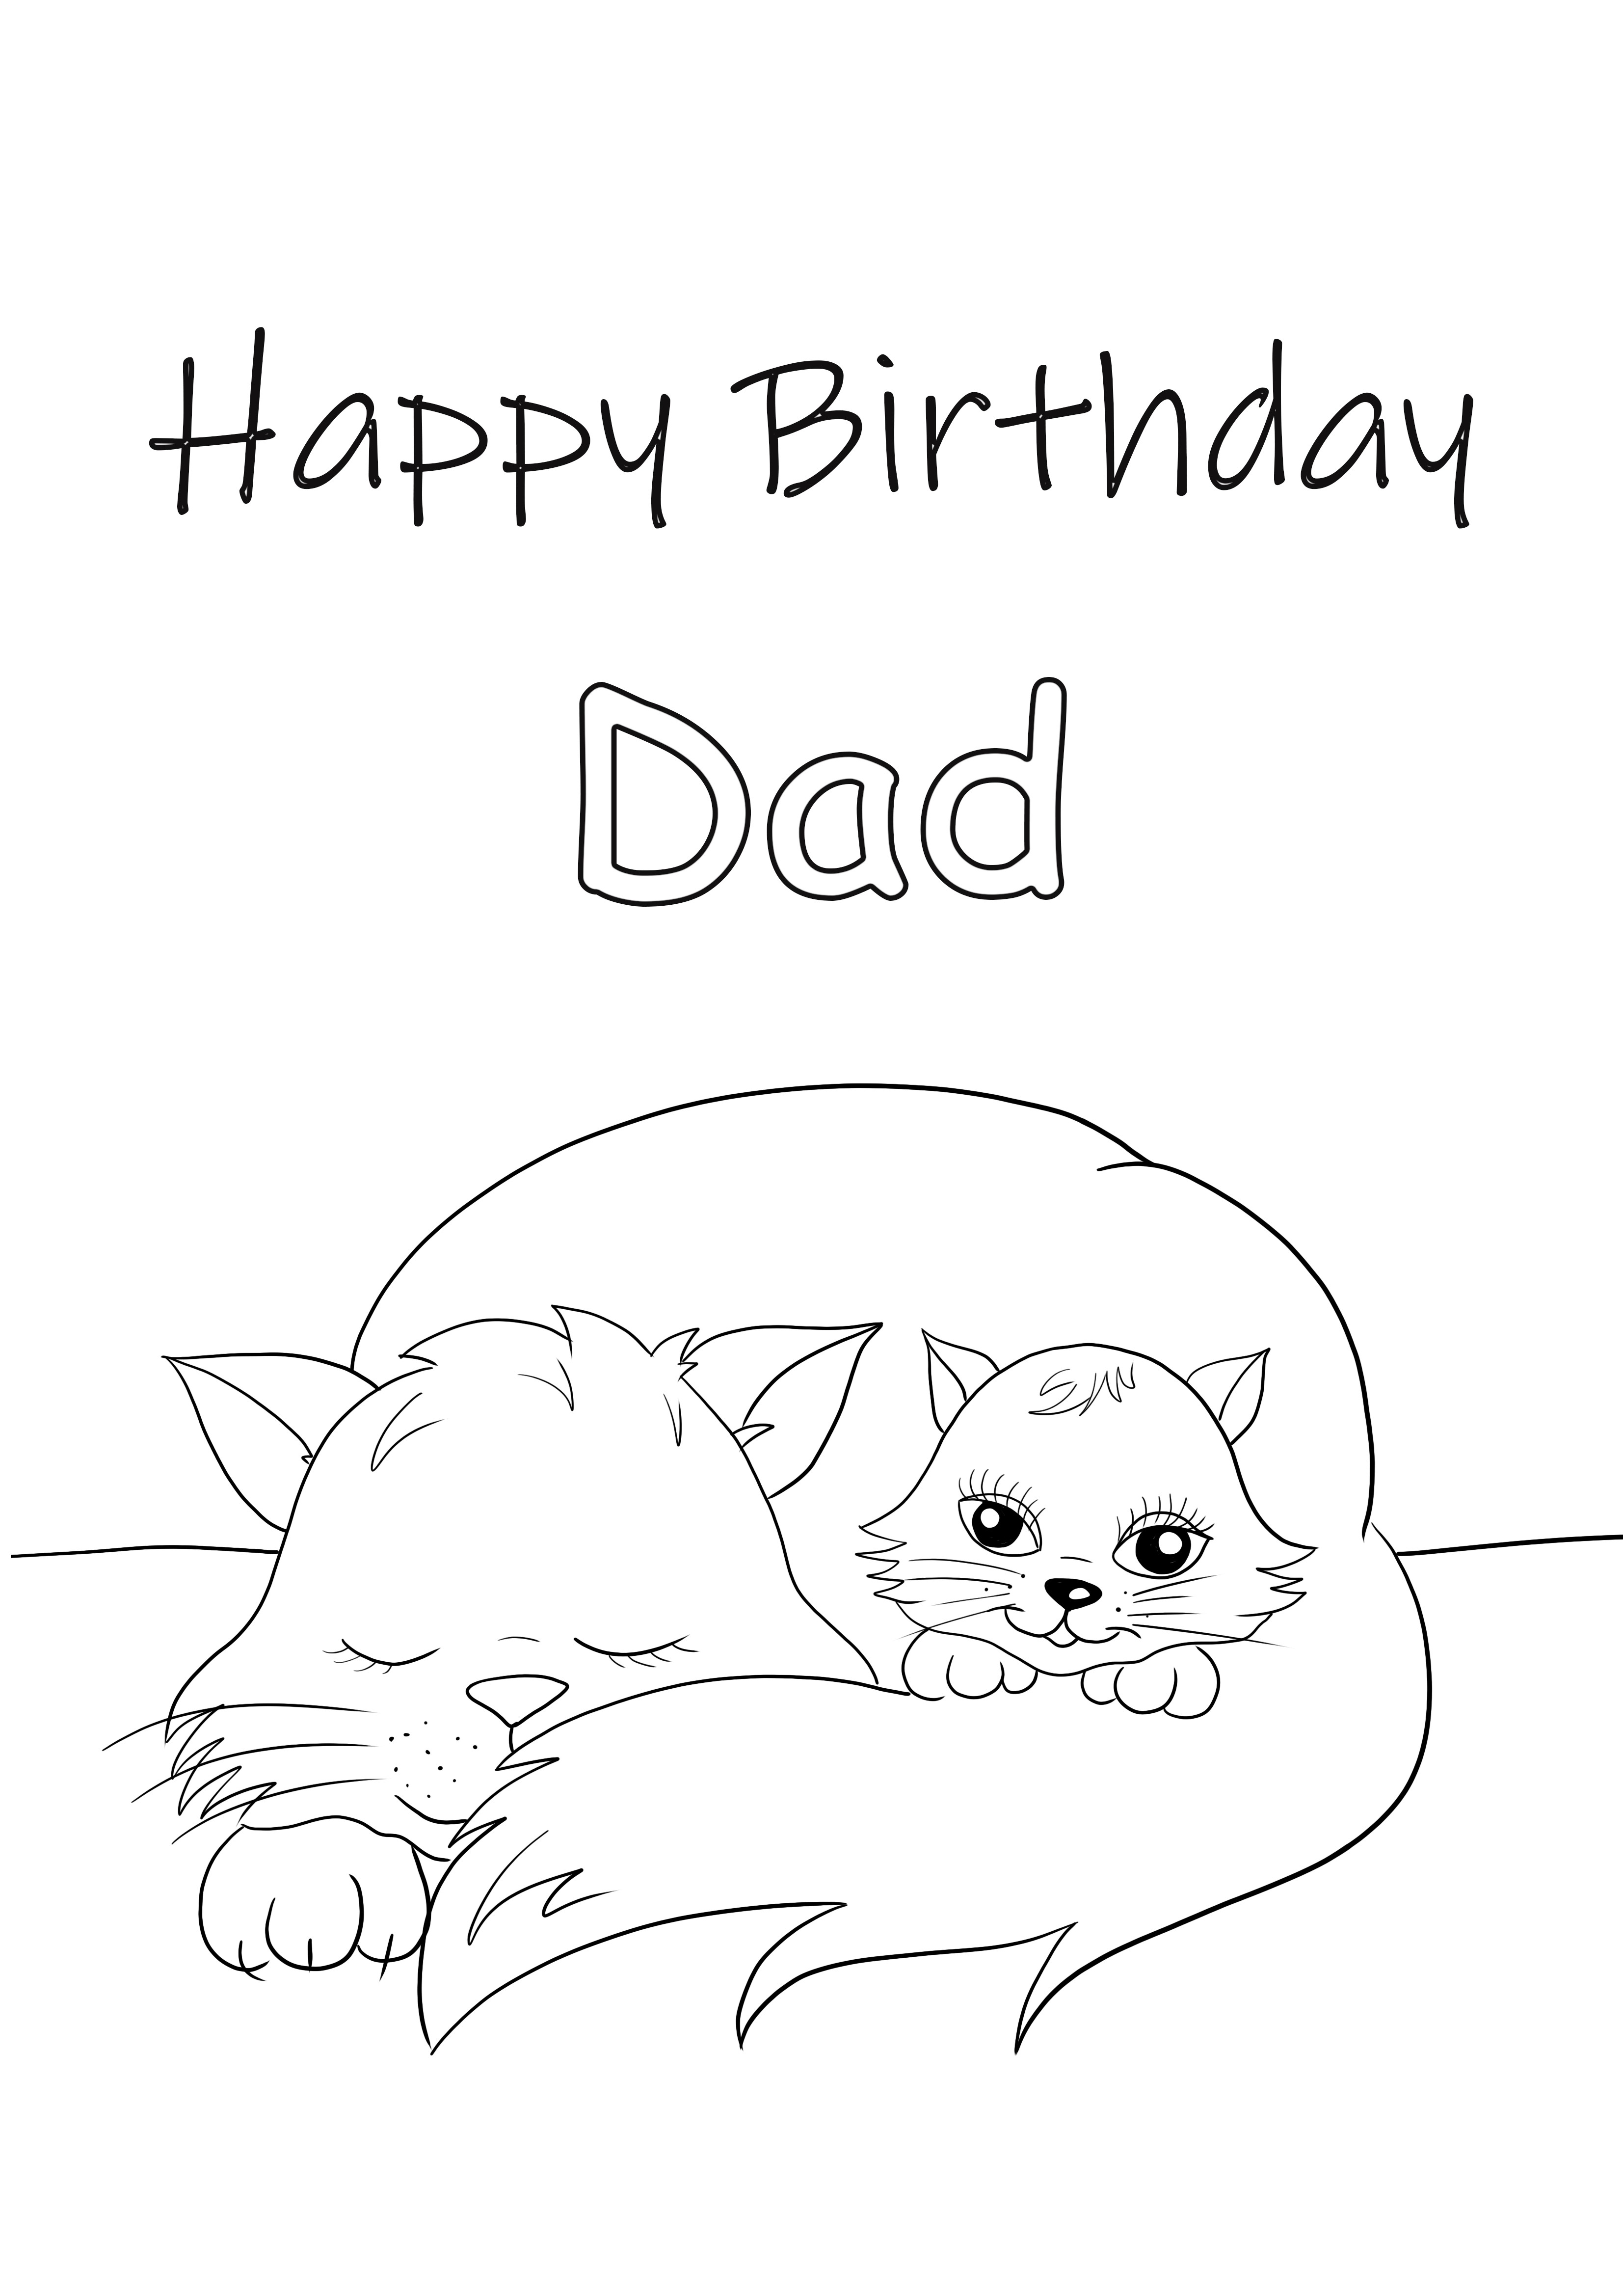 Cartão H B-day Dad para baixar e colorir gratuitamente